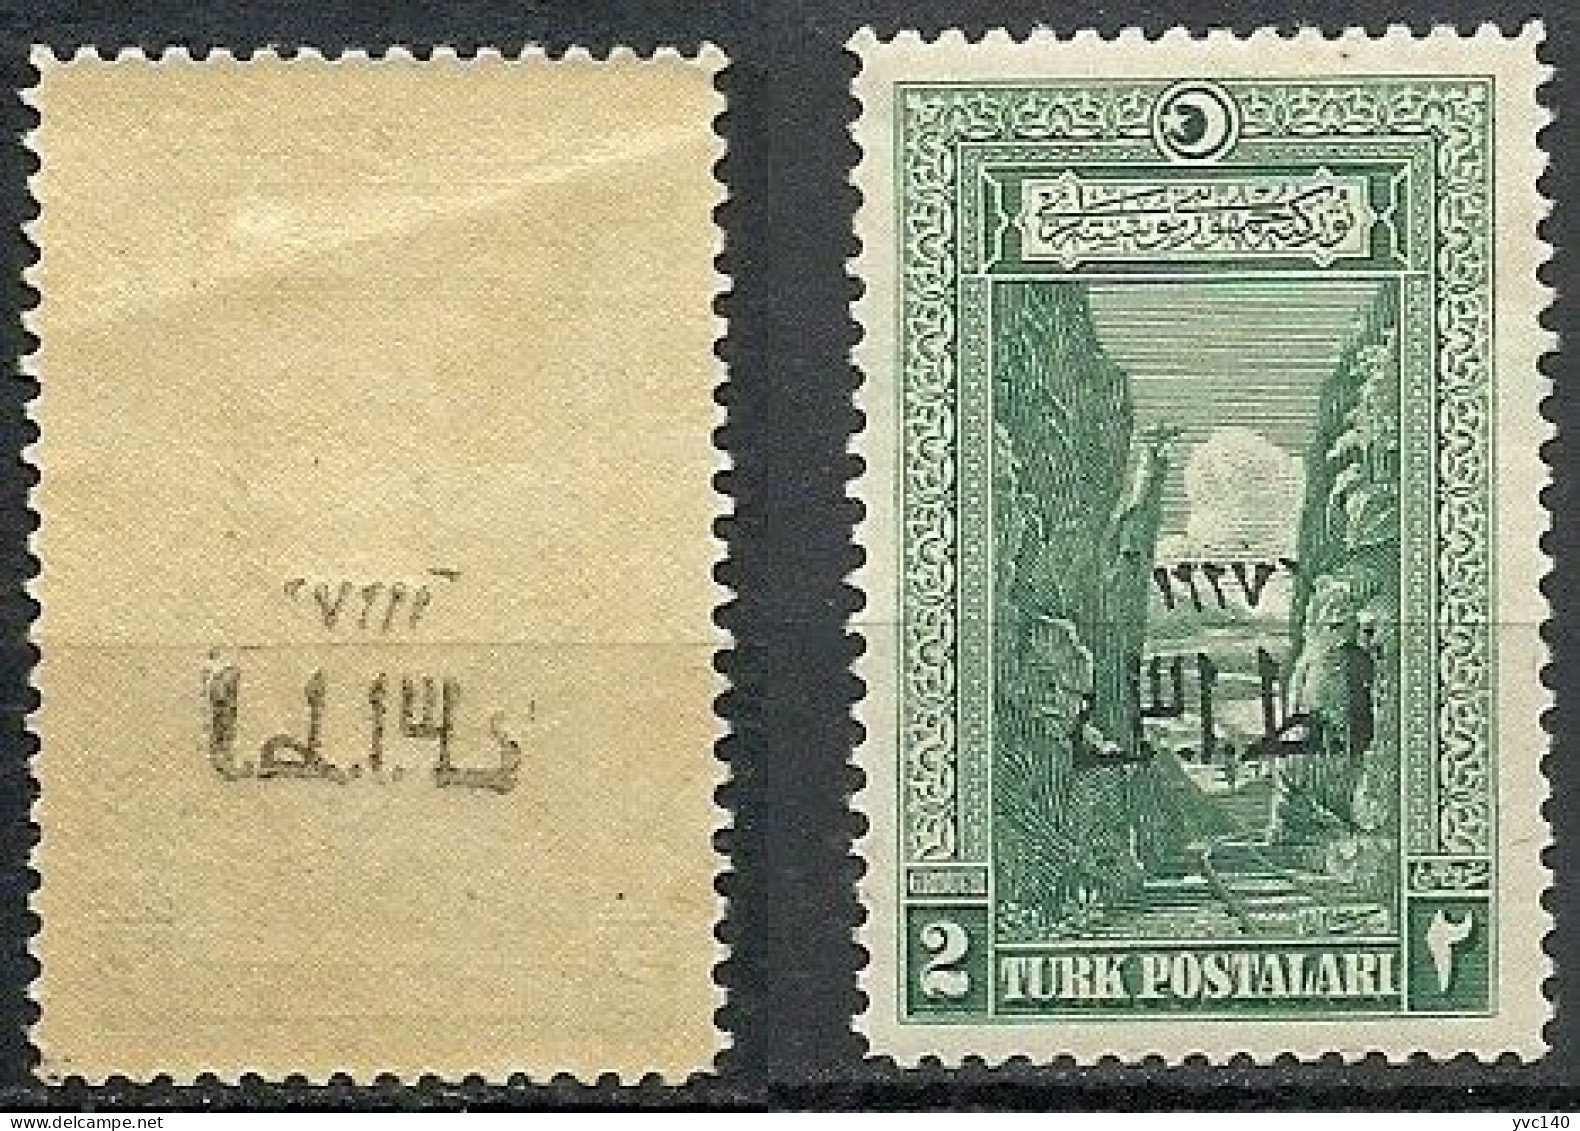 Turkey; 1927 Overprinted 1st Smyrna Exhibition Stamp 2 K. "Abklatsch Overprint" ERROR - Unused Stamps